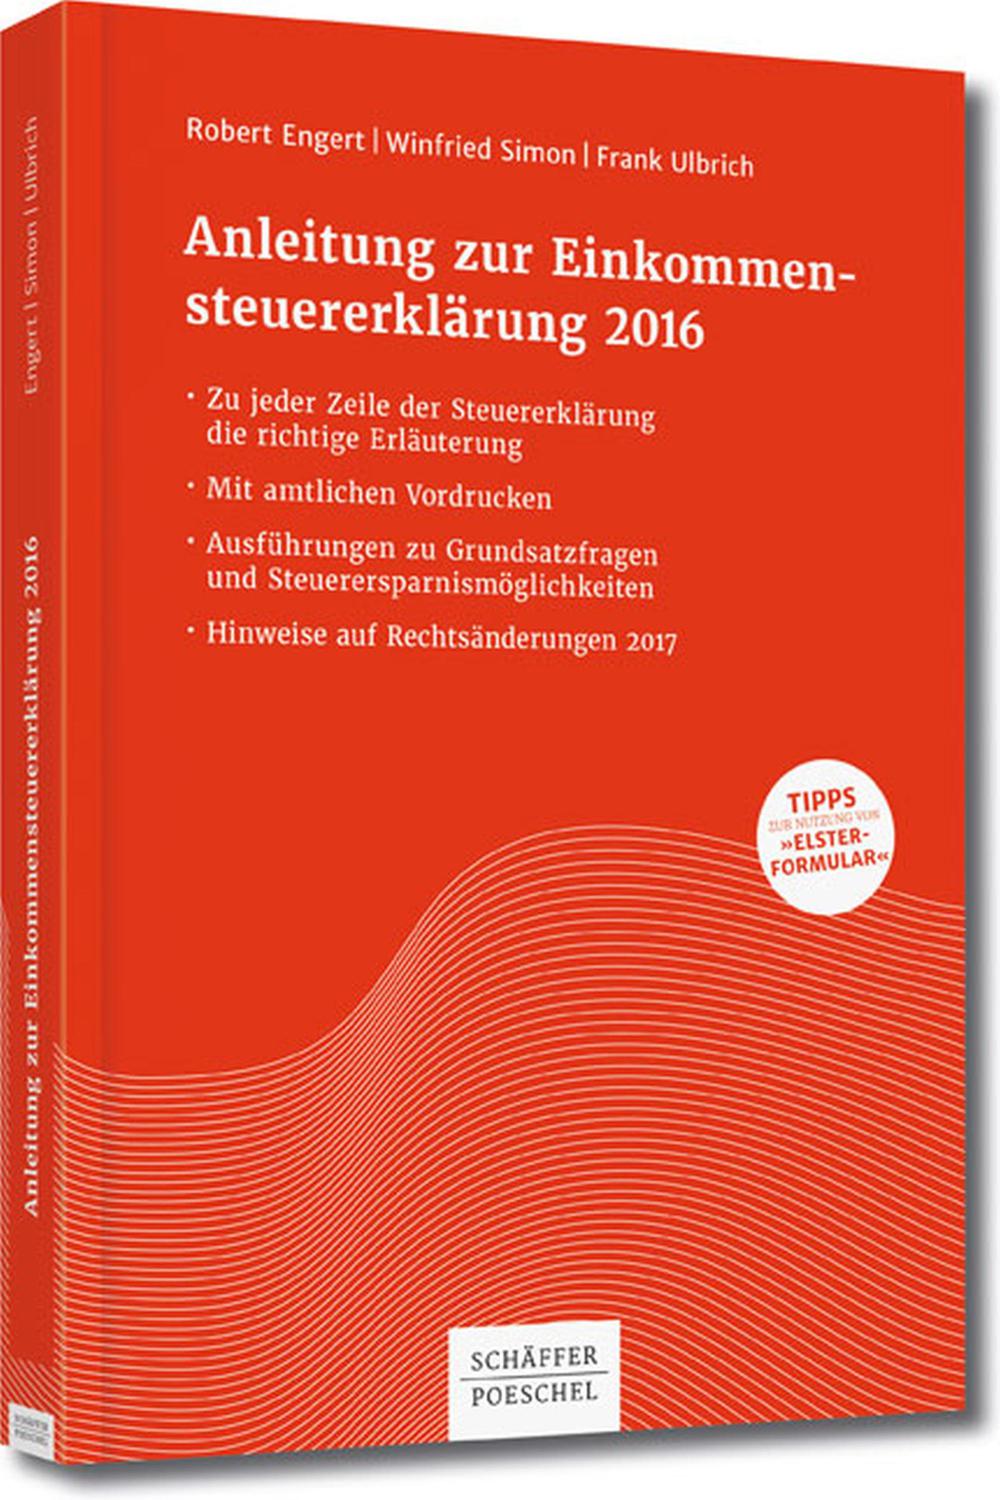 Anleitung zur Einkommensteuererklärung 2016 - Robert Engert, Winfried Simon, Frank Ulbrich